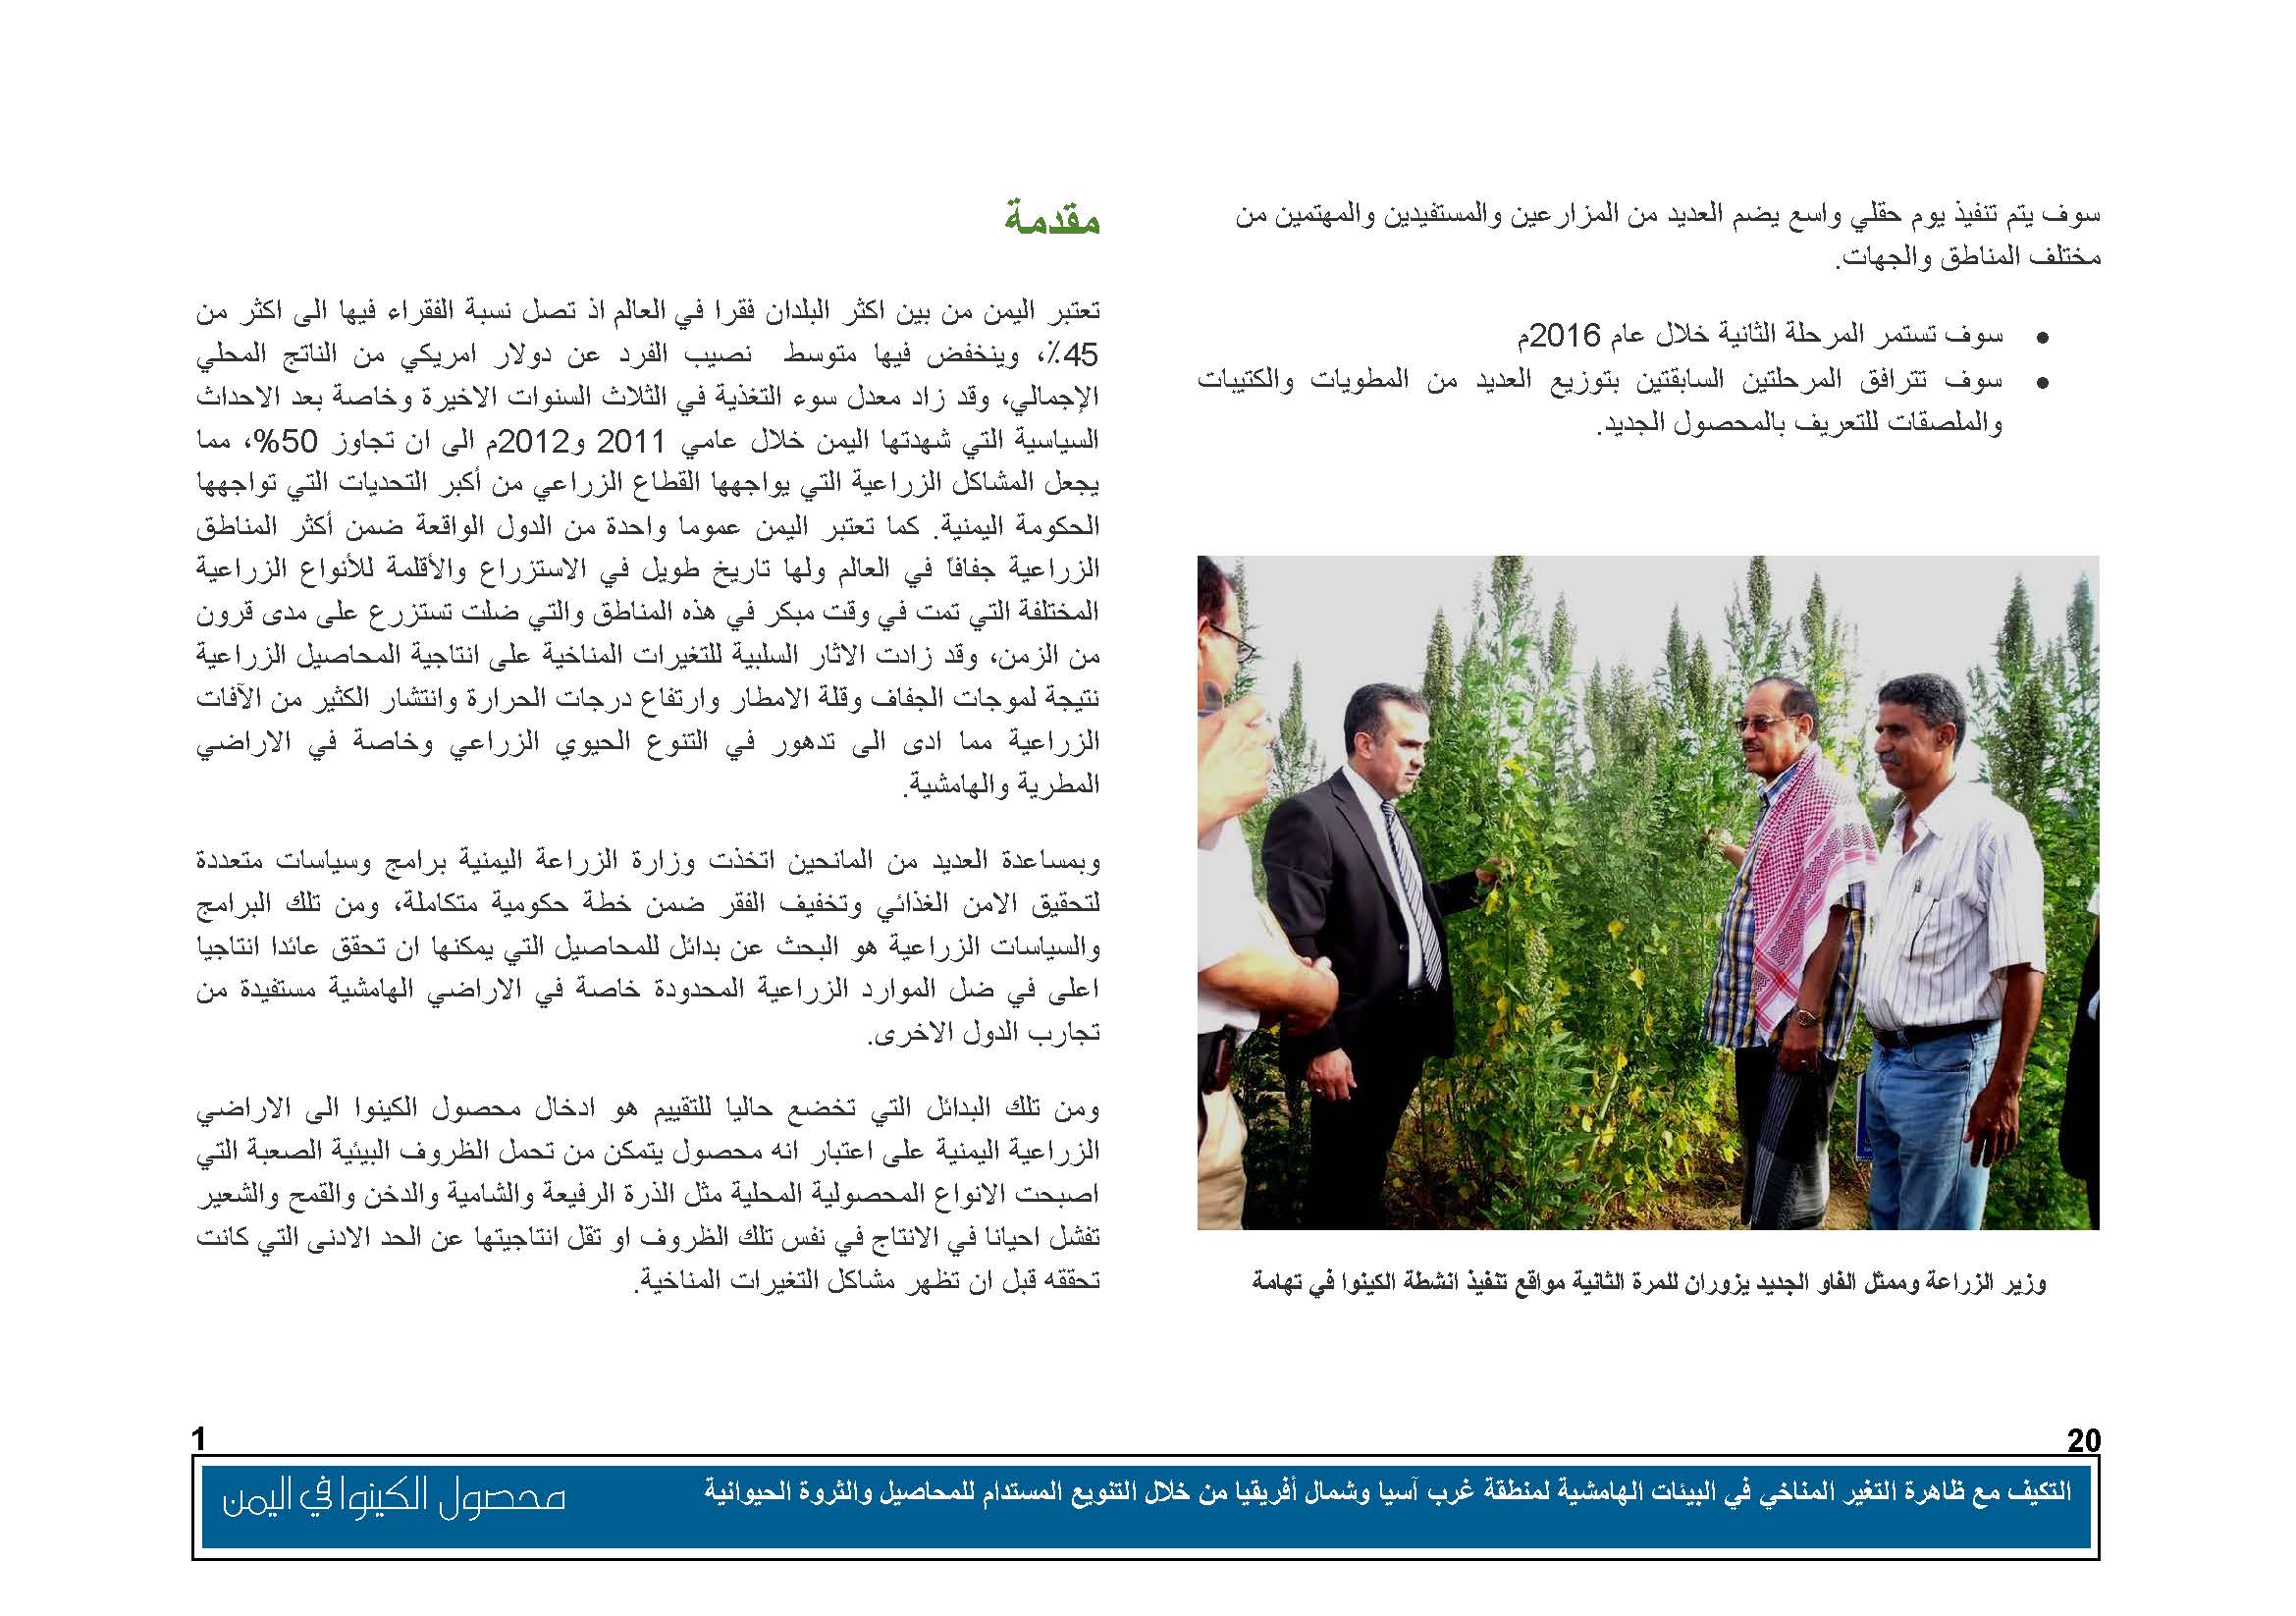 محصول الكينوا في اليمن (1)_Page_02